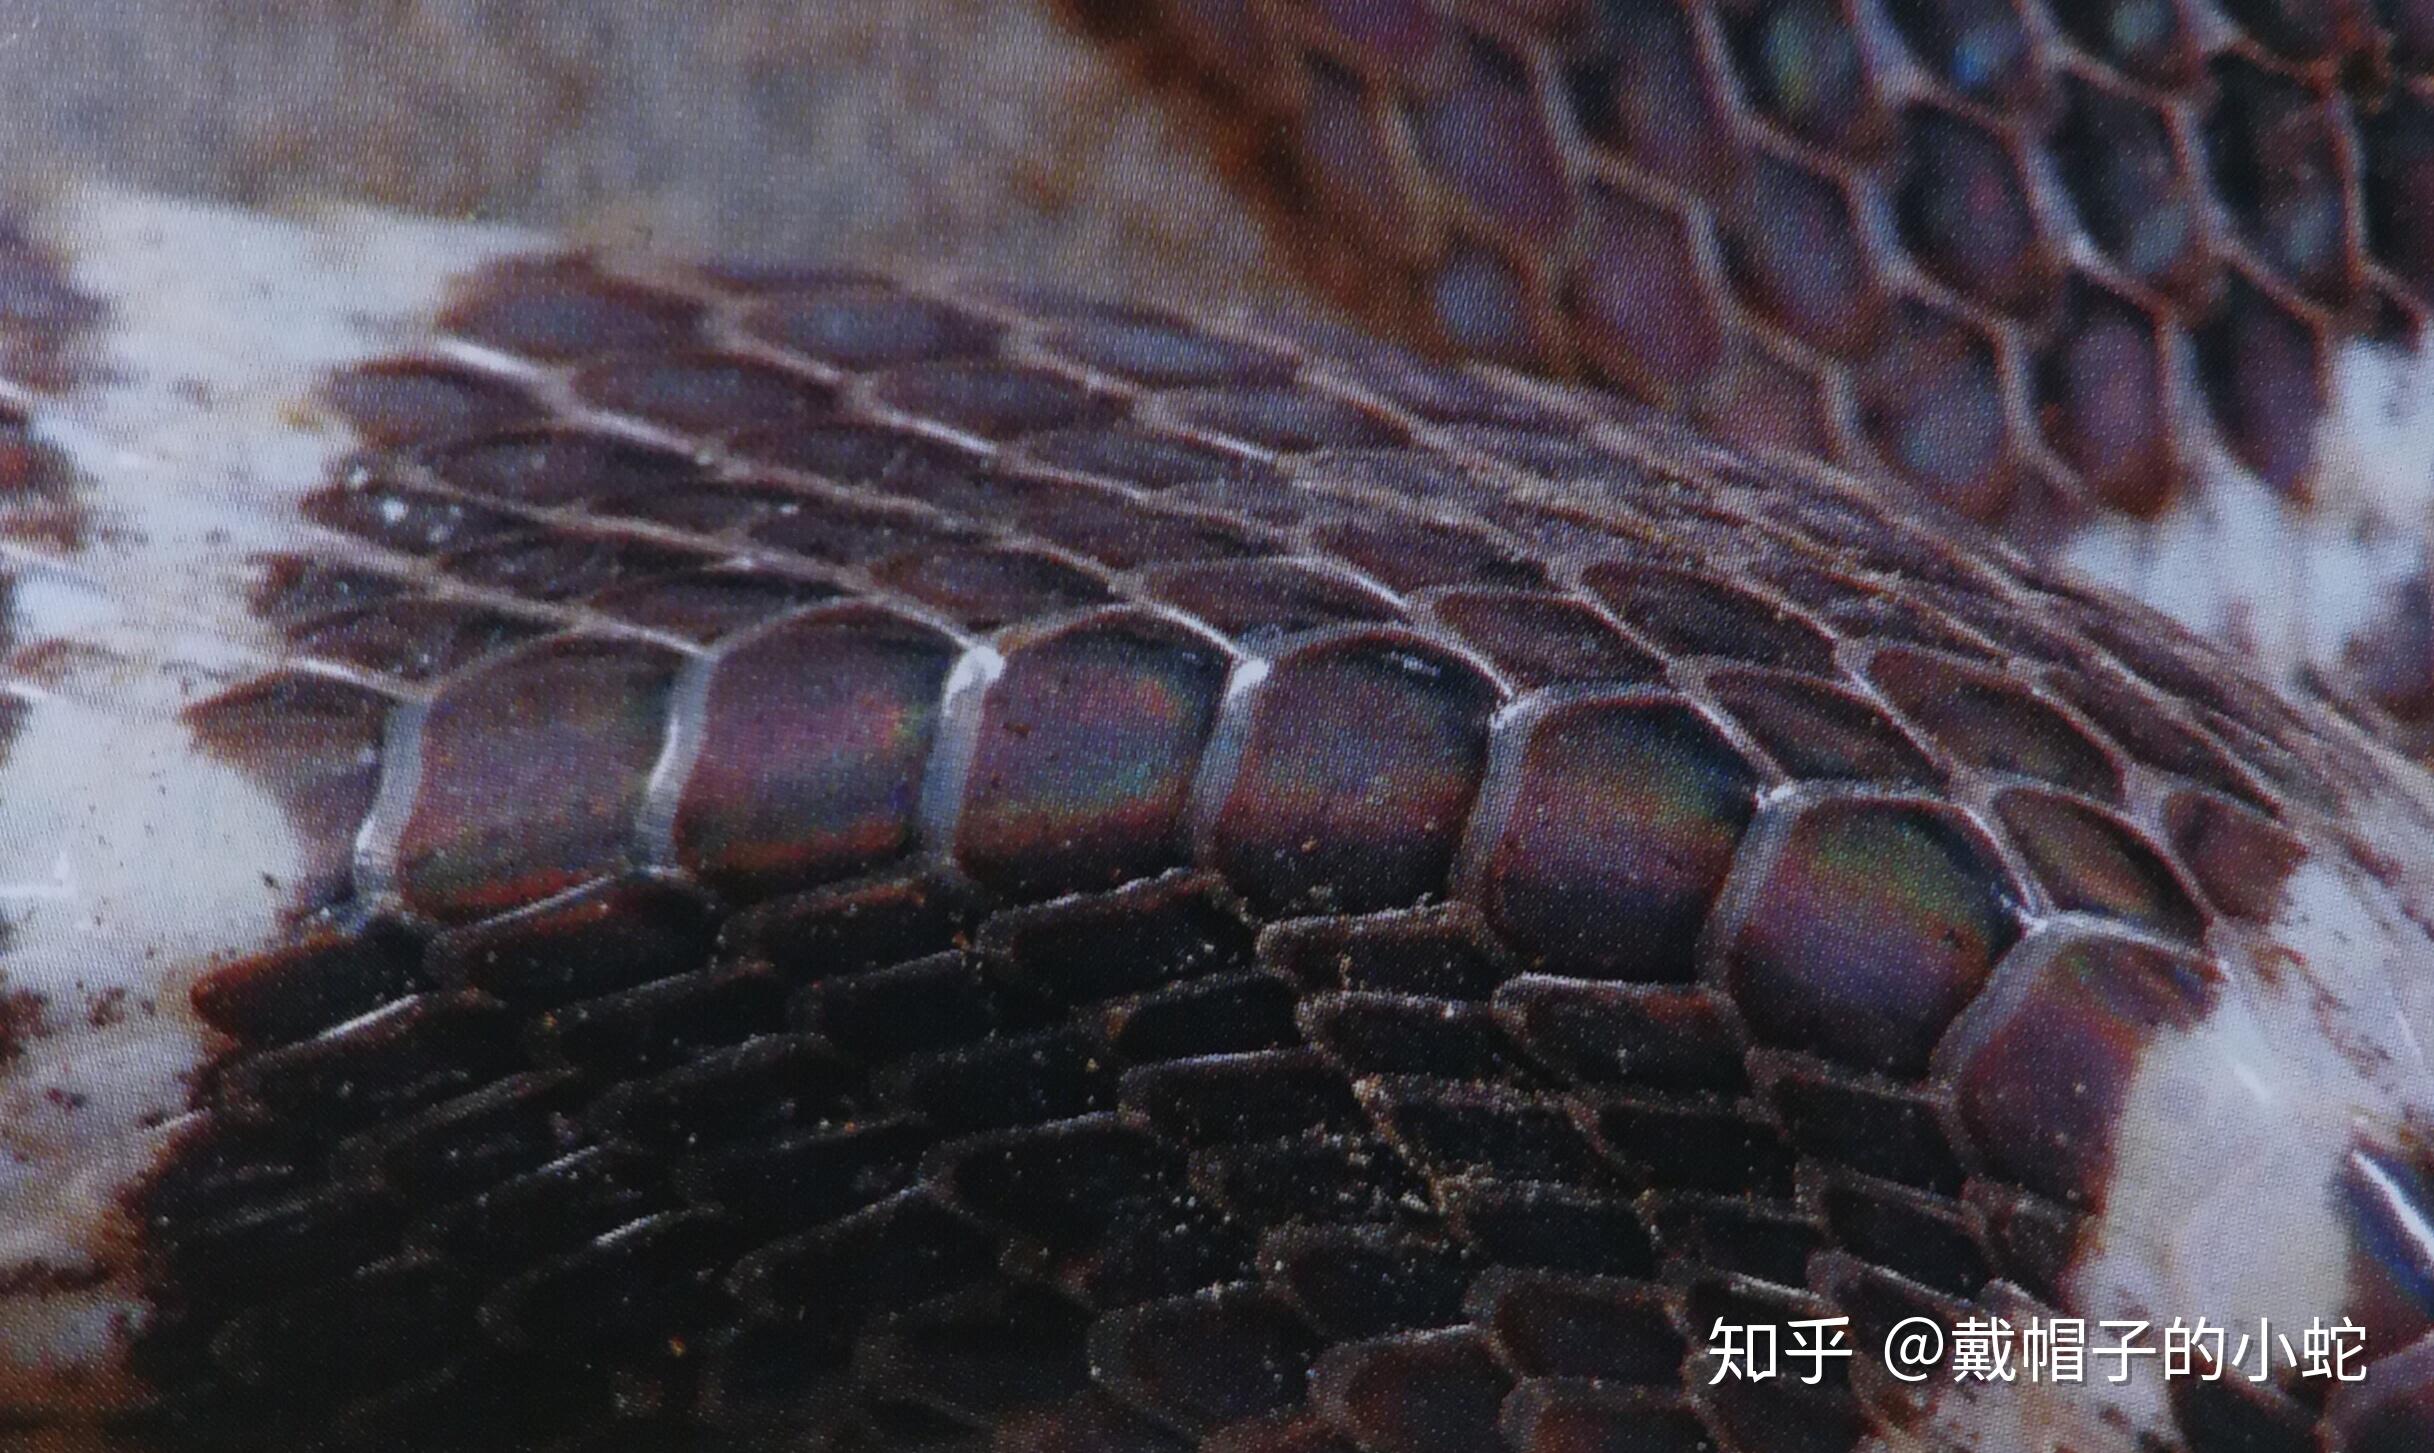 爬行动物皮肤蛇 库存照片. 图片 包括有 详细资料, 皮革, 异乎寻常, 设计, 爬行动物, 关闭, 灰色 - 23320664